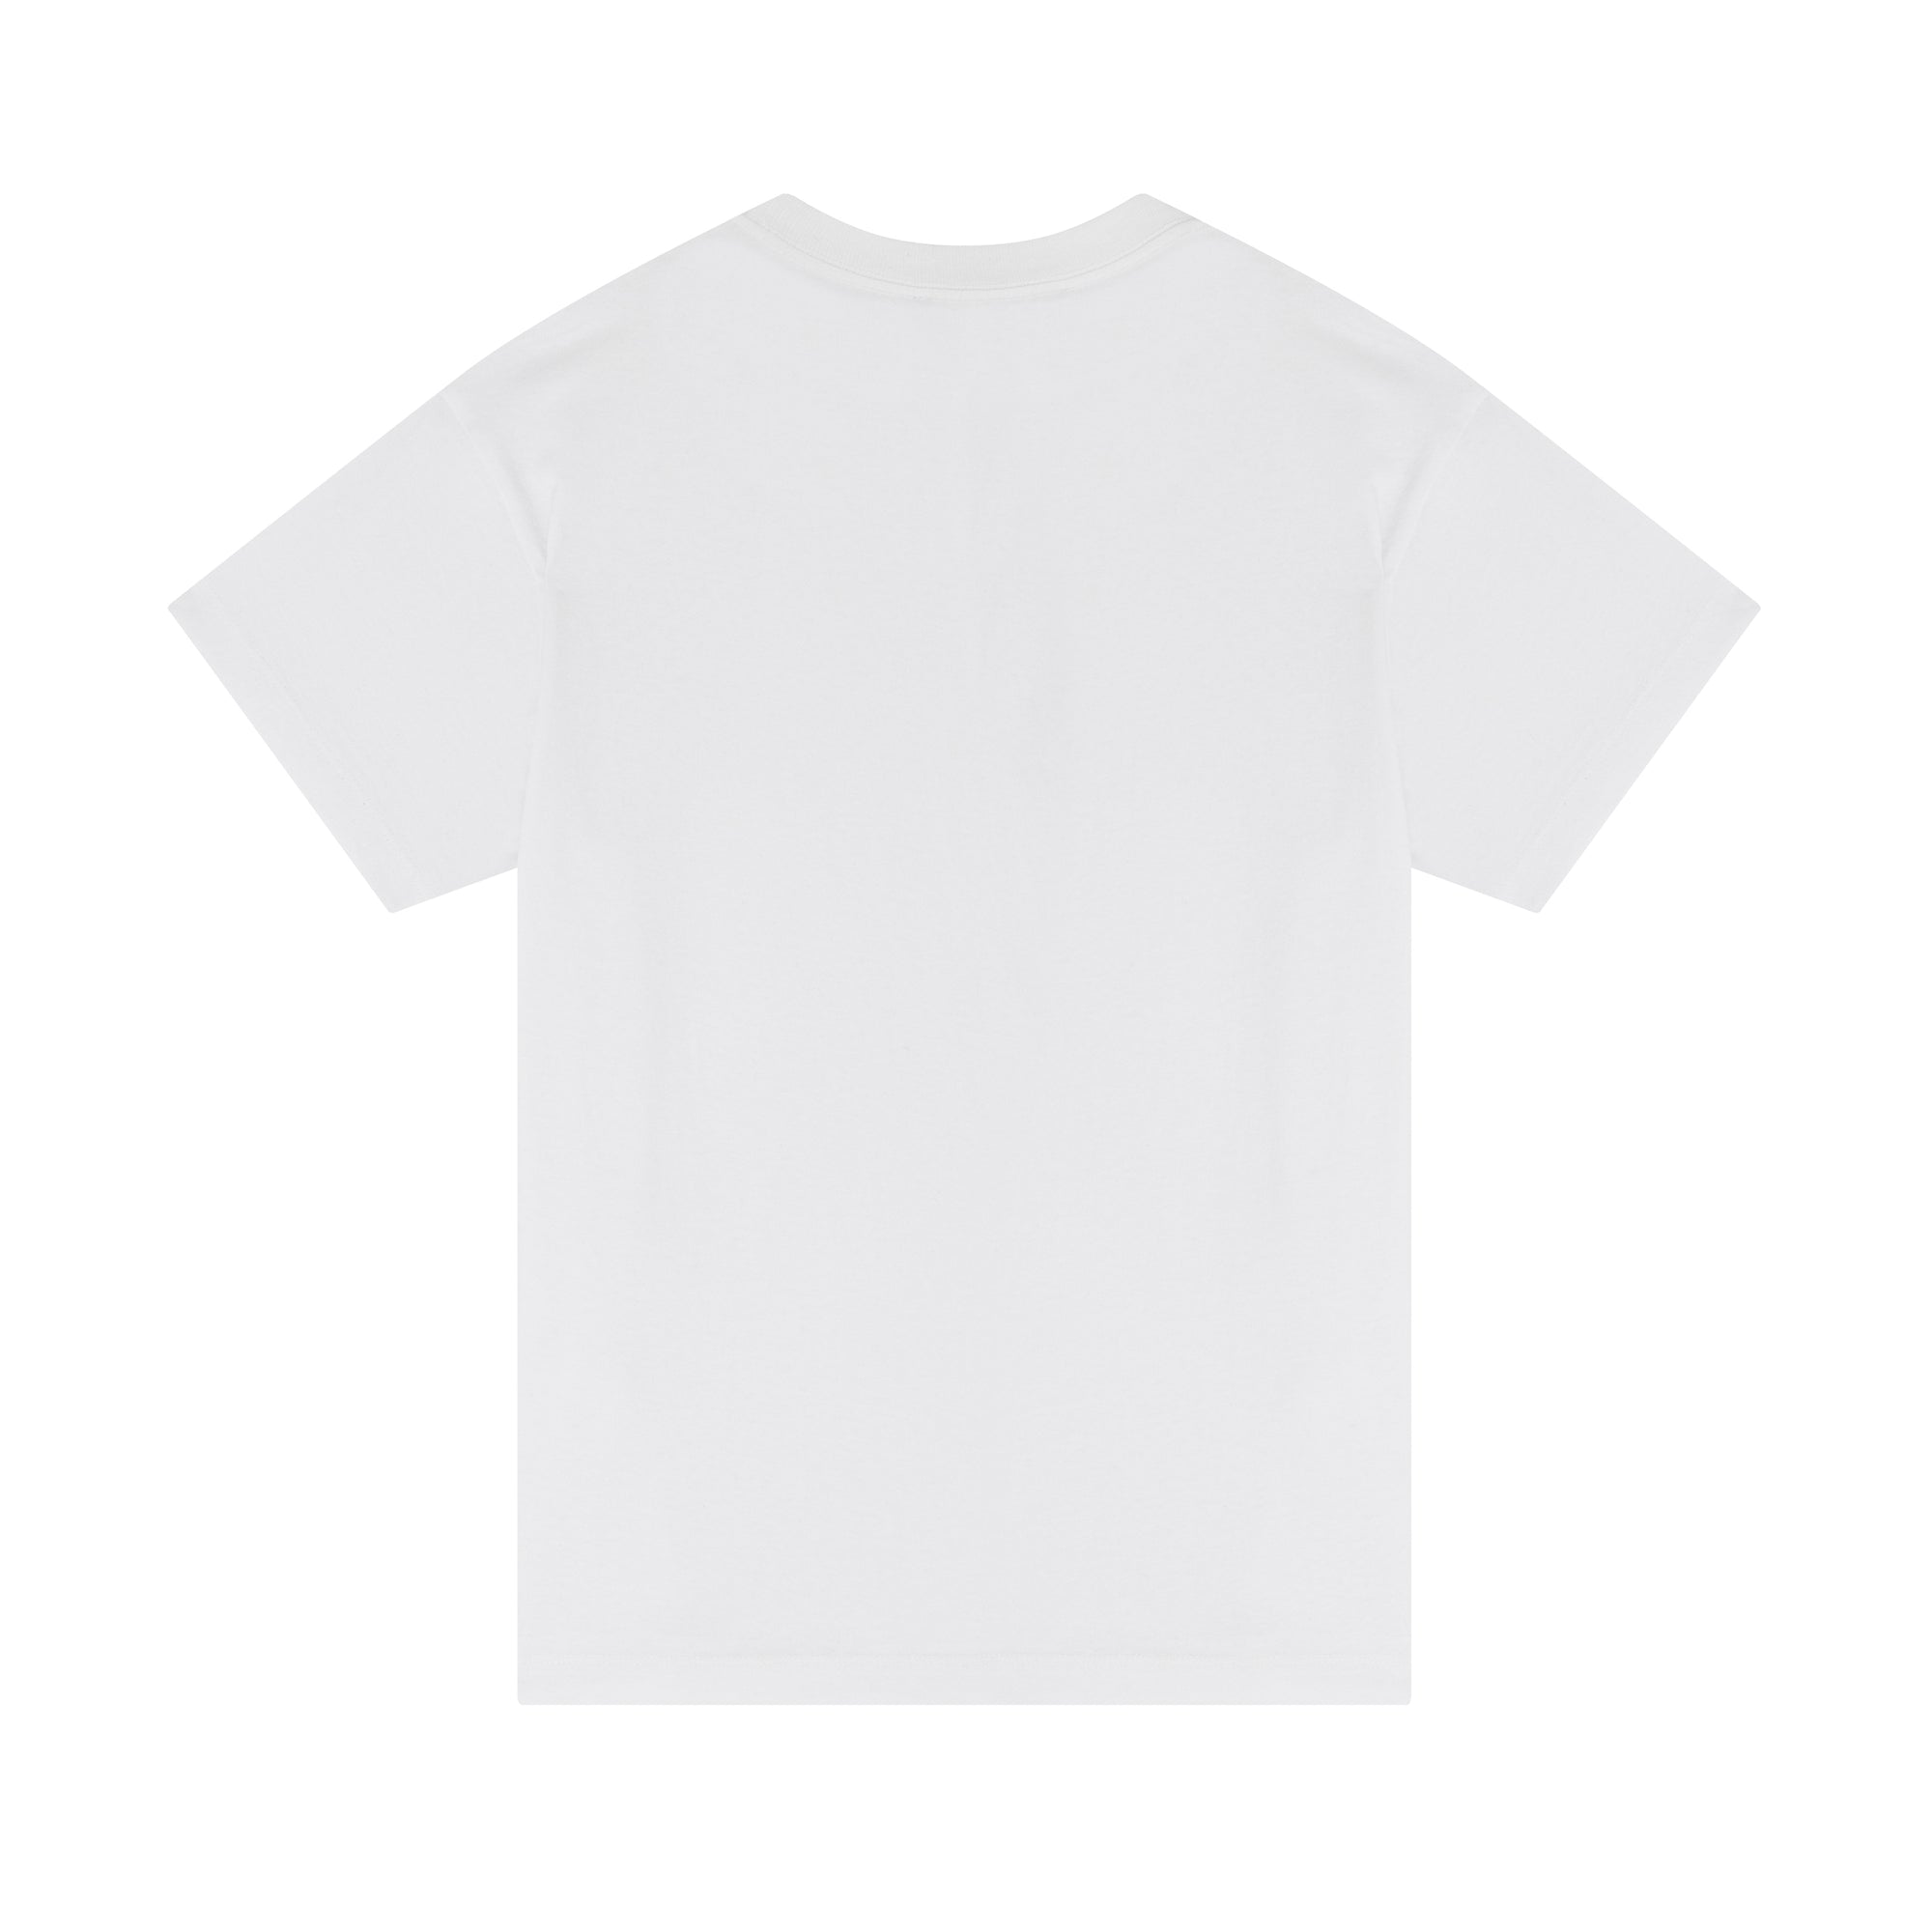 Denim Tears - Men's Denim University T-Shirt - (White) view 2